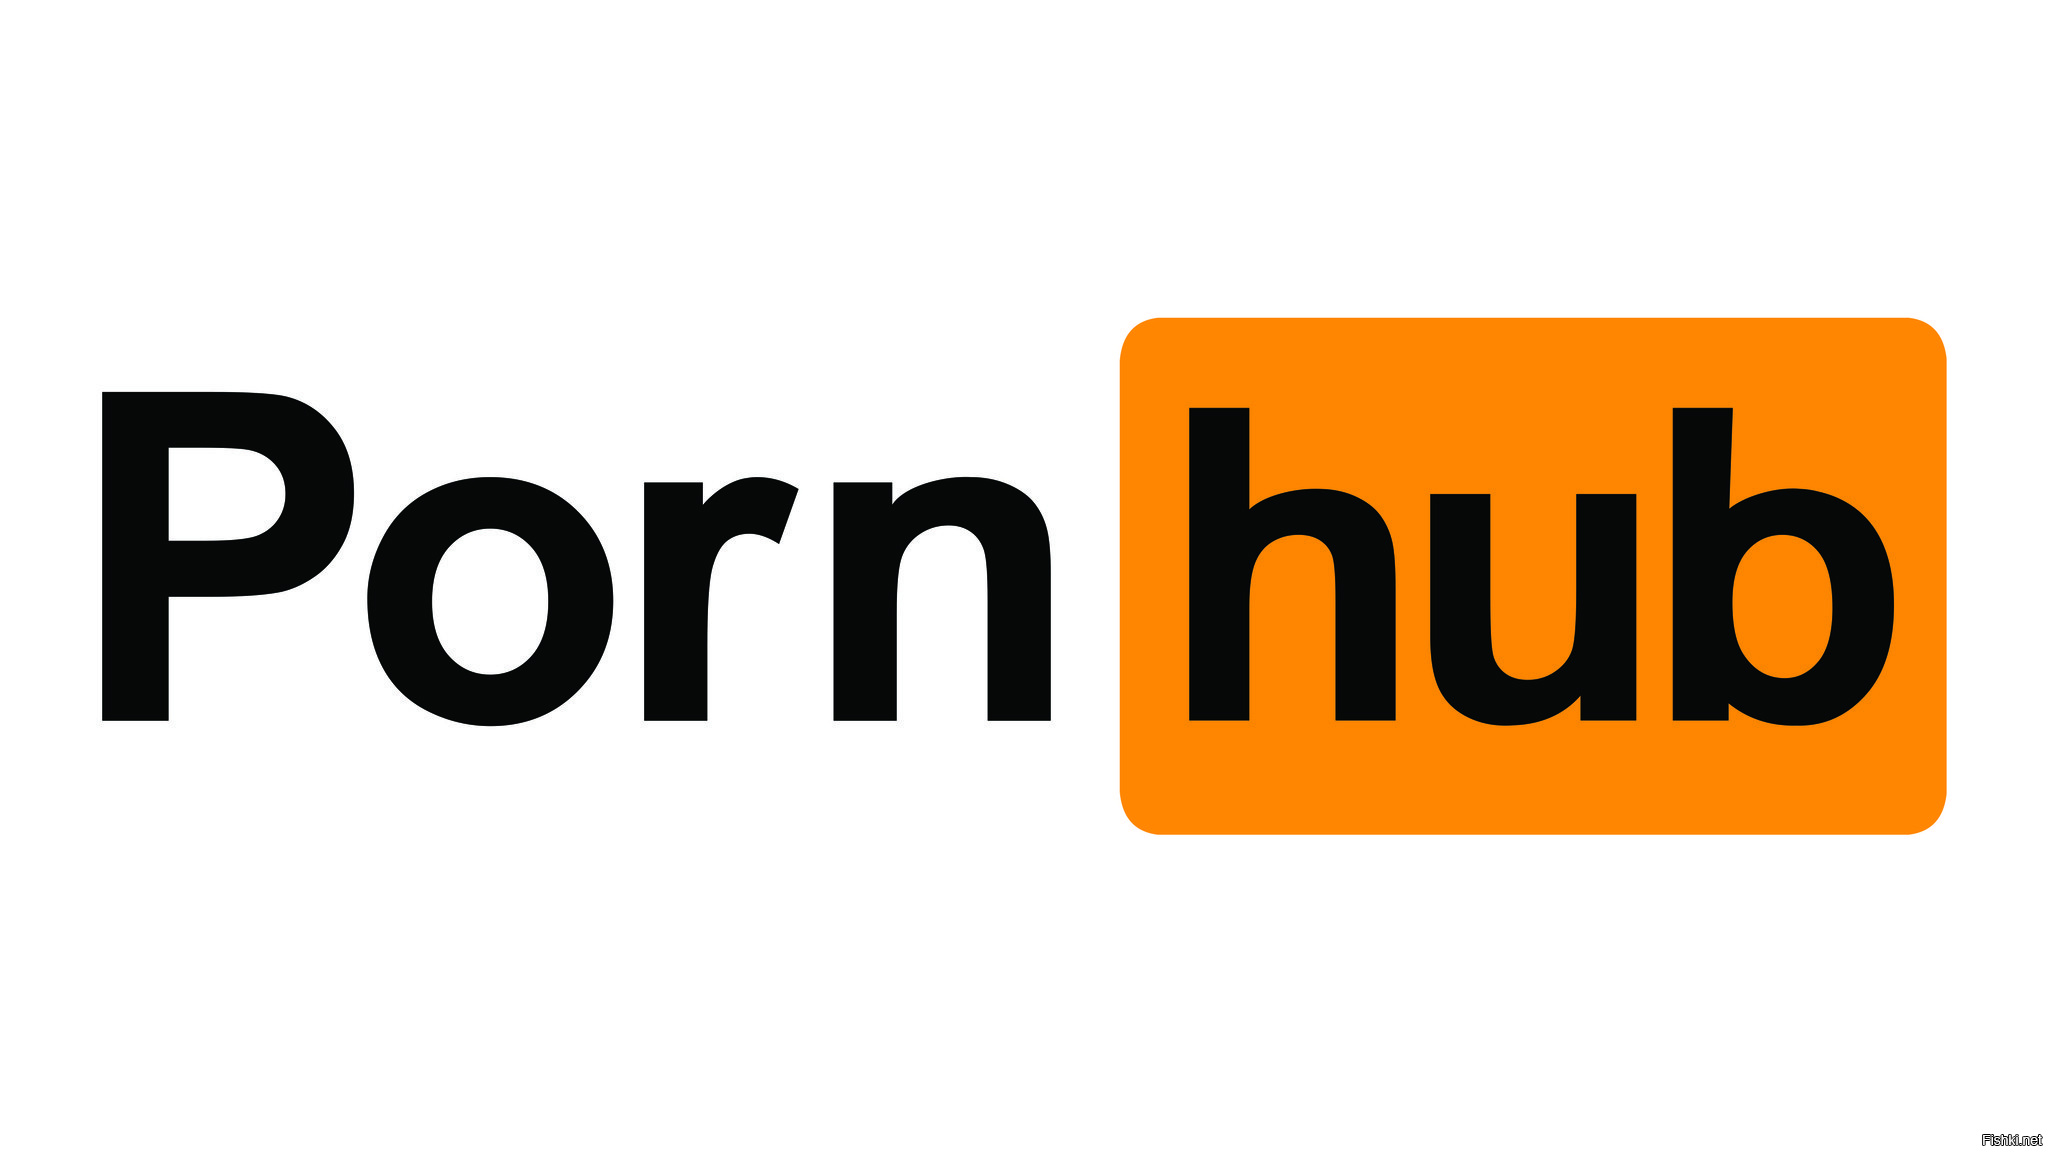 Pornxnn